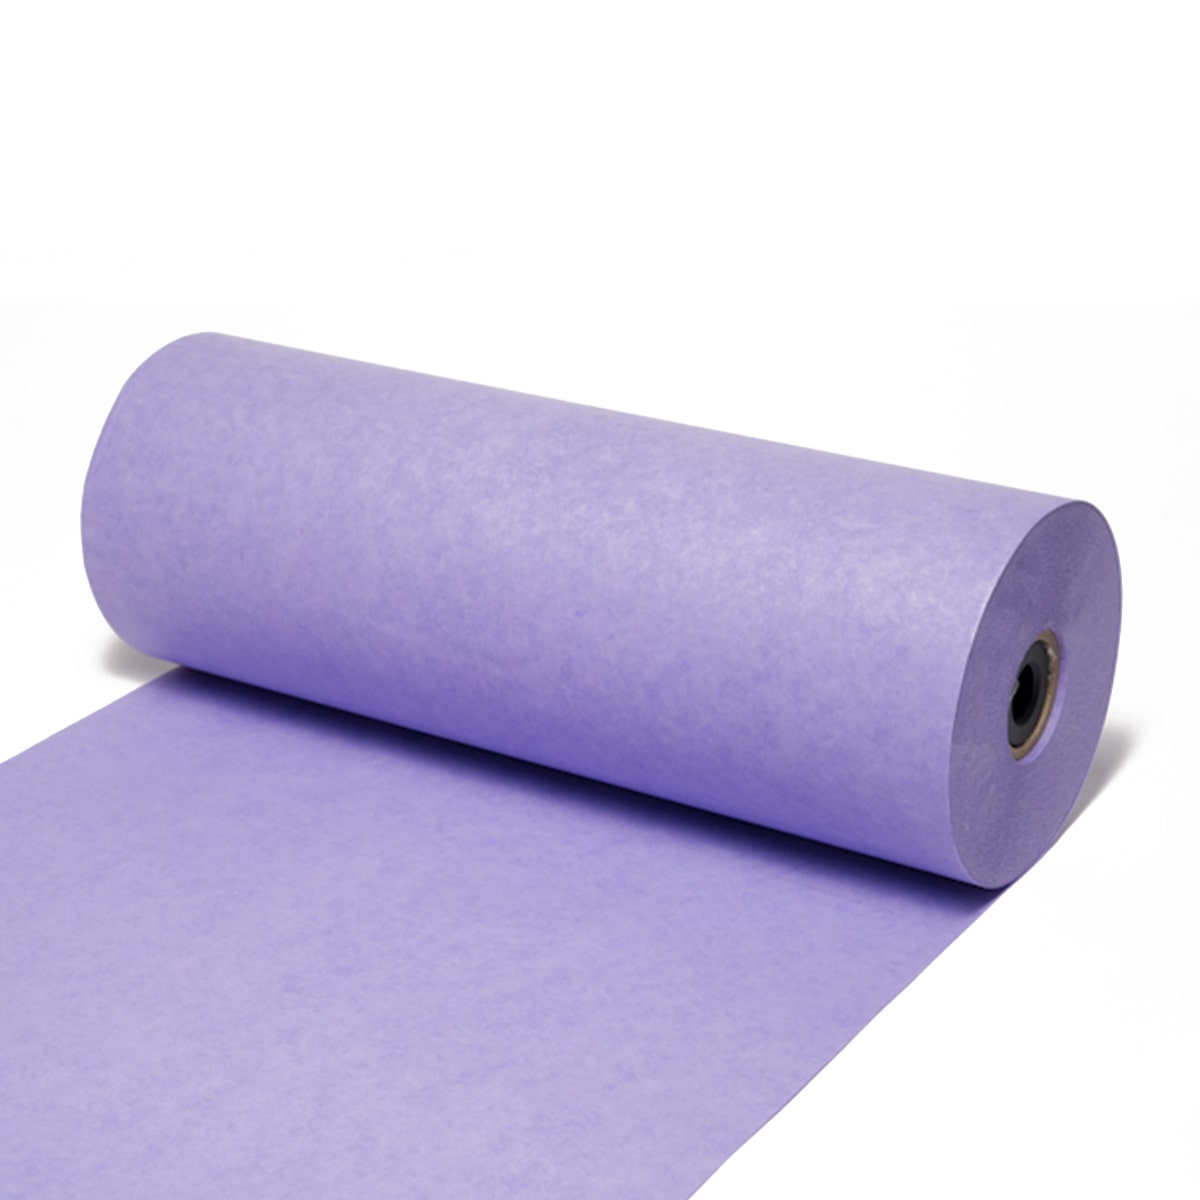 Seidenpapier Lavendel, 50 / 75 cm breit, ca. 500 Meter / Rolle